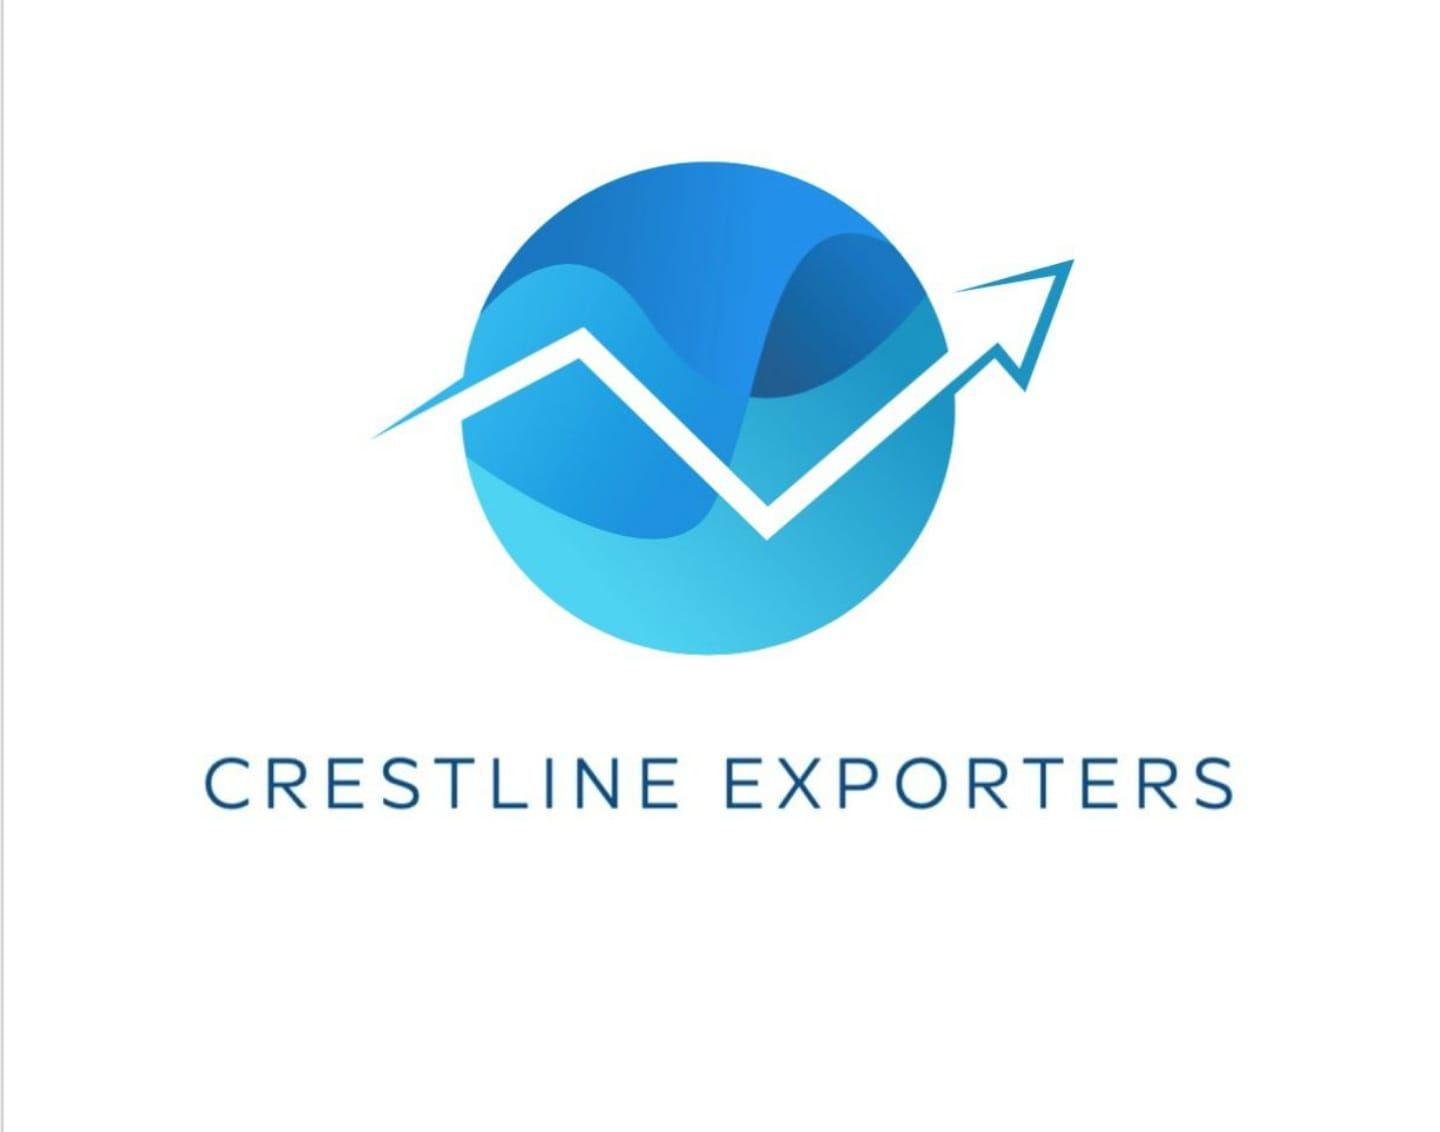 Crestline Exporters